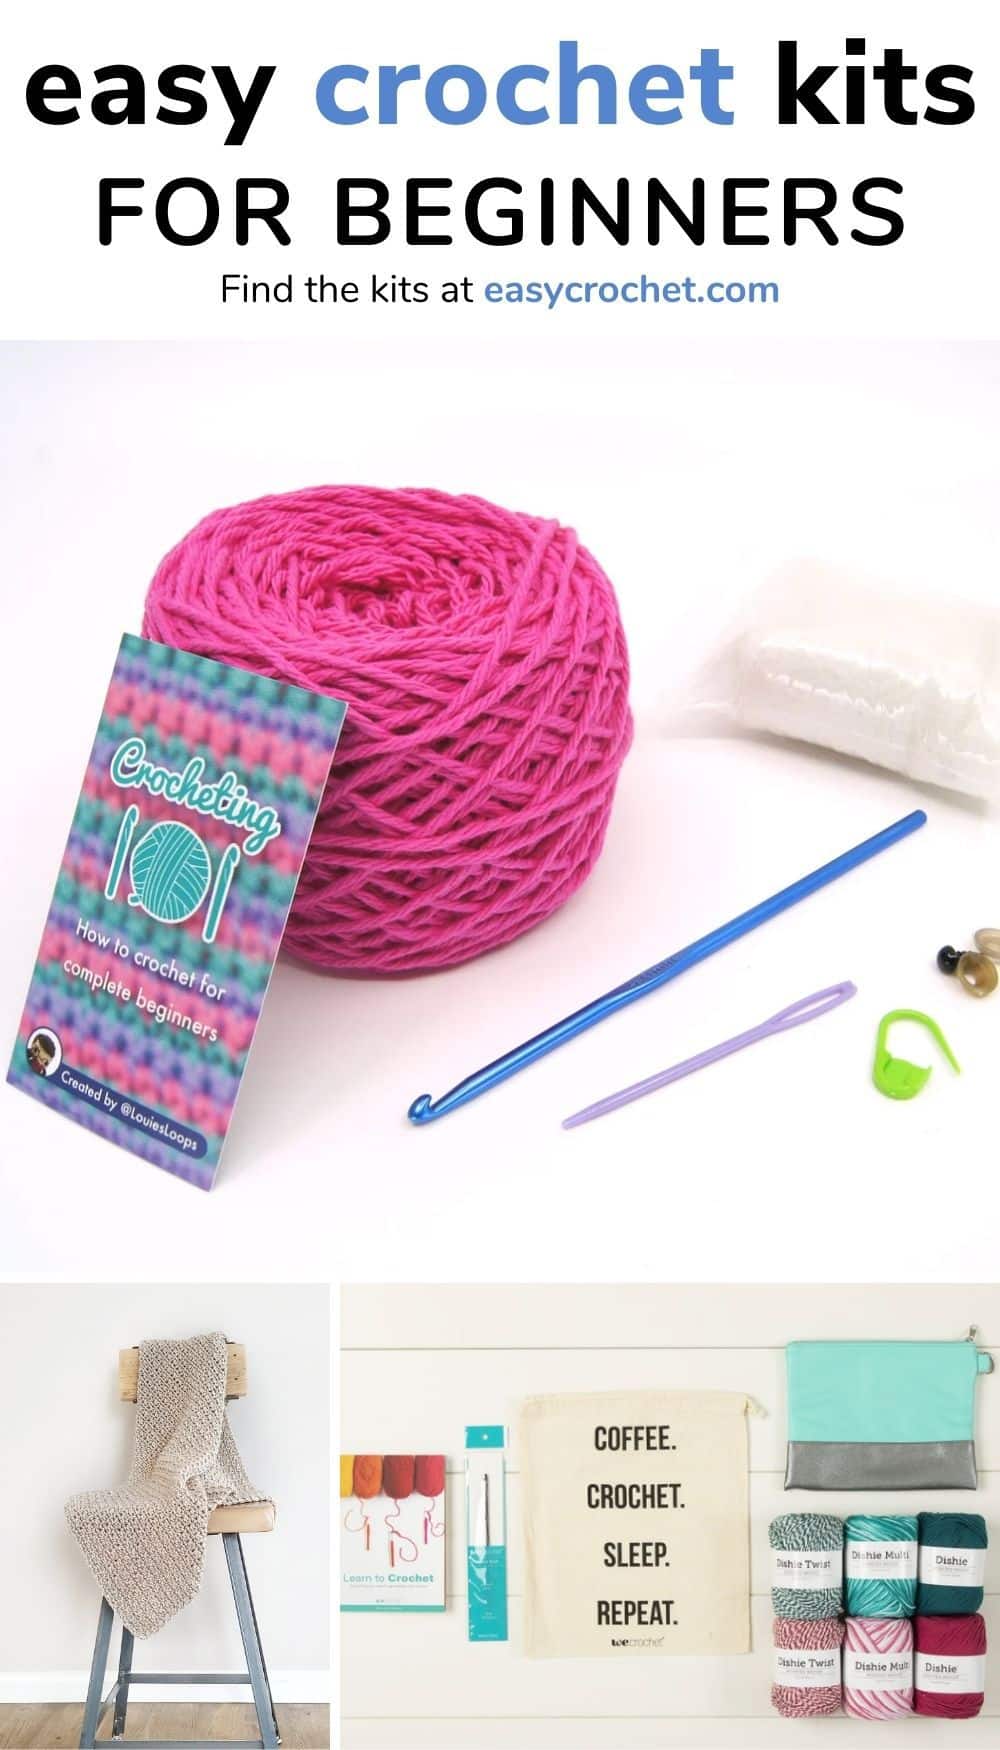 crochet kits for beginner crocheters